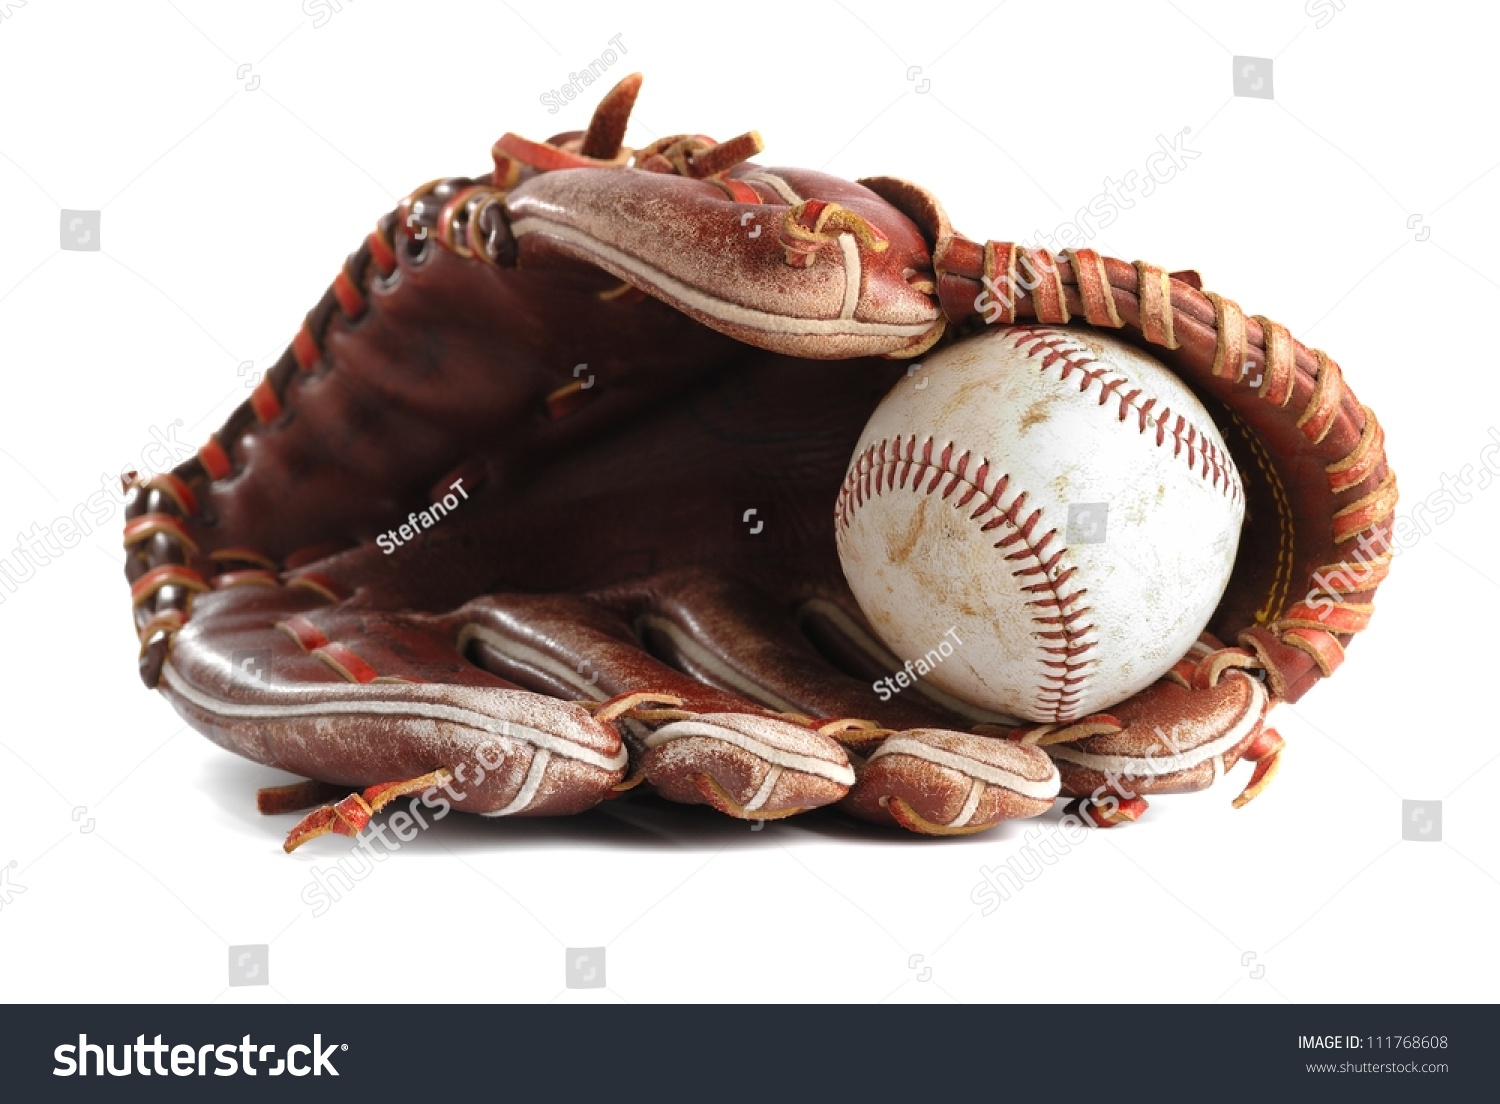 Baseball glove #111768608